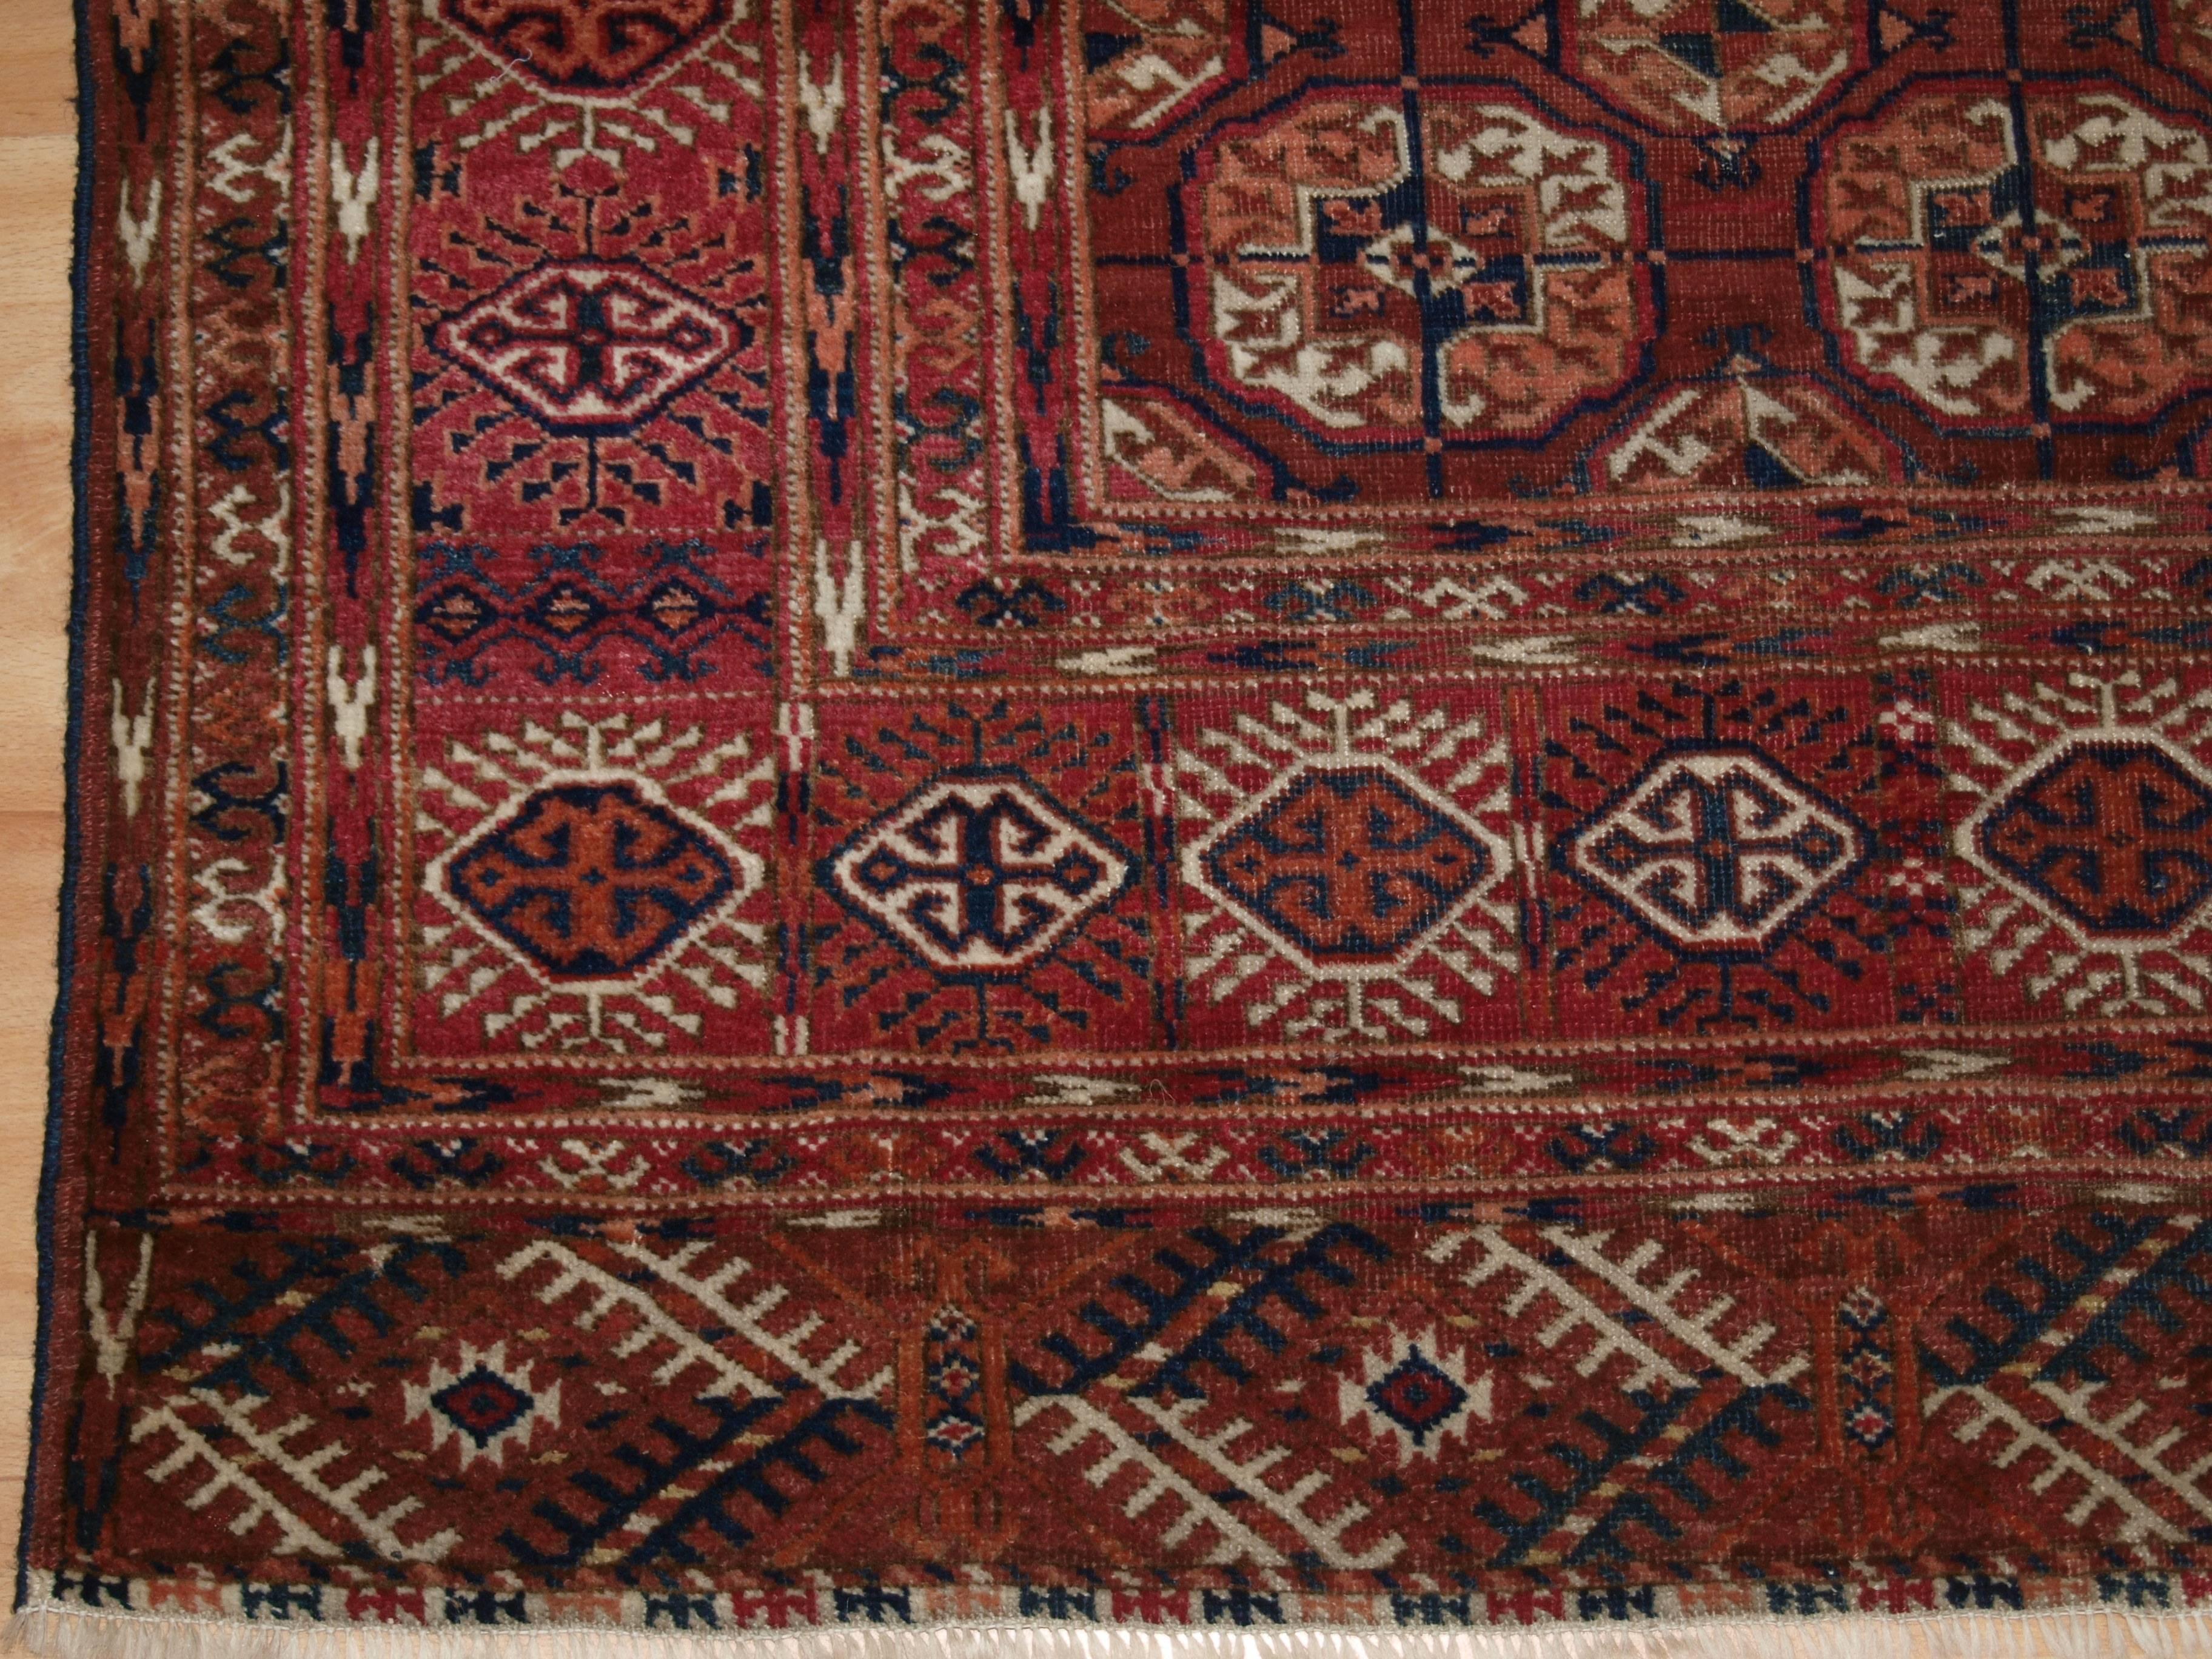 Central Asian Antique Tekke Turkmen Rug of Excellent Design and Color For Sale